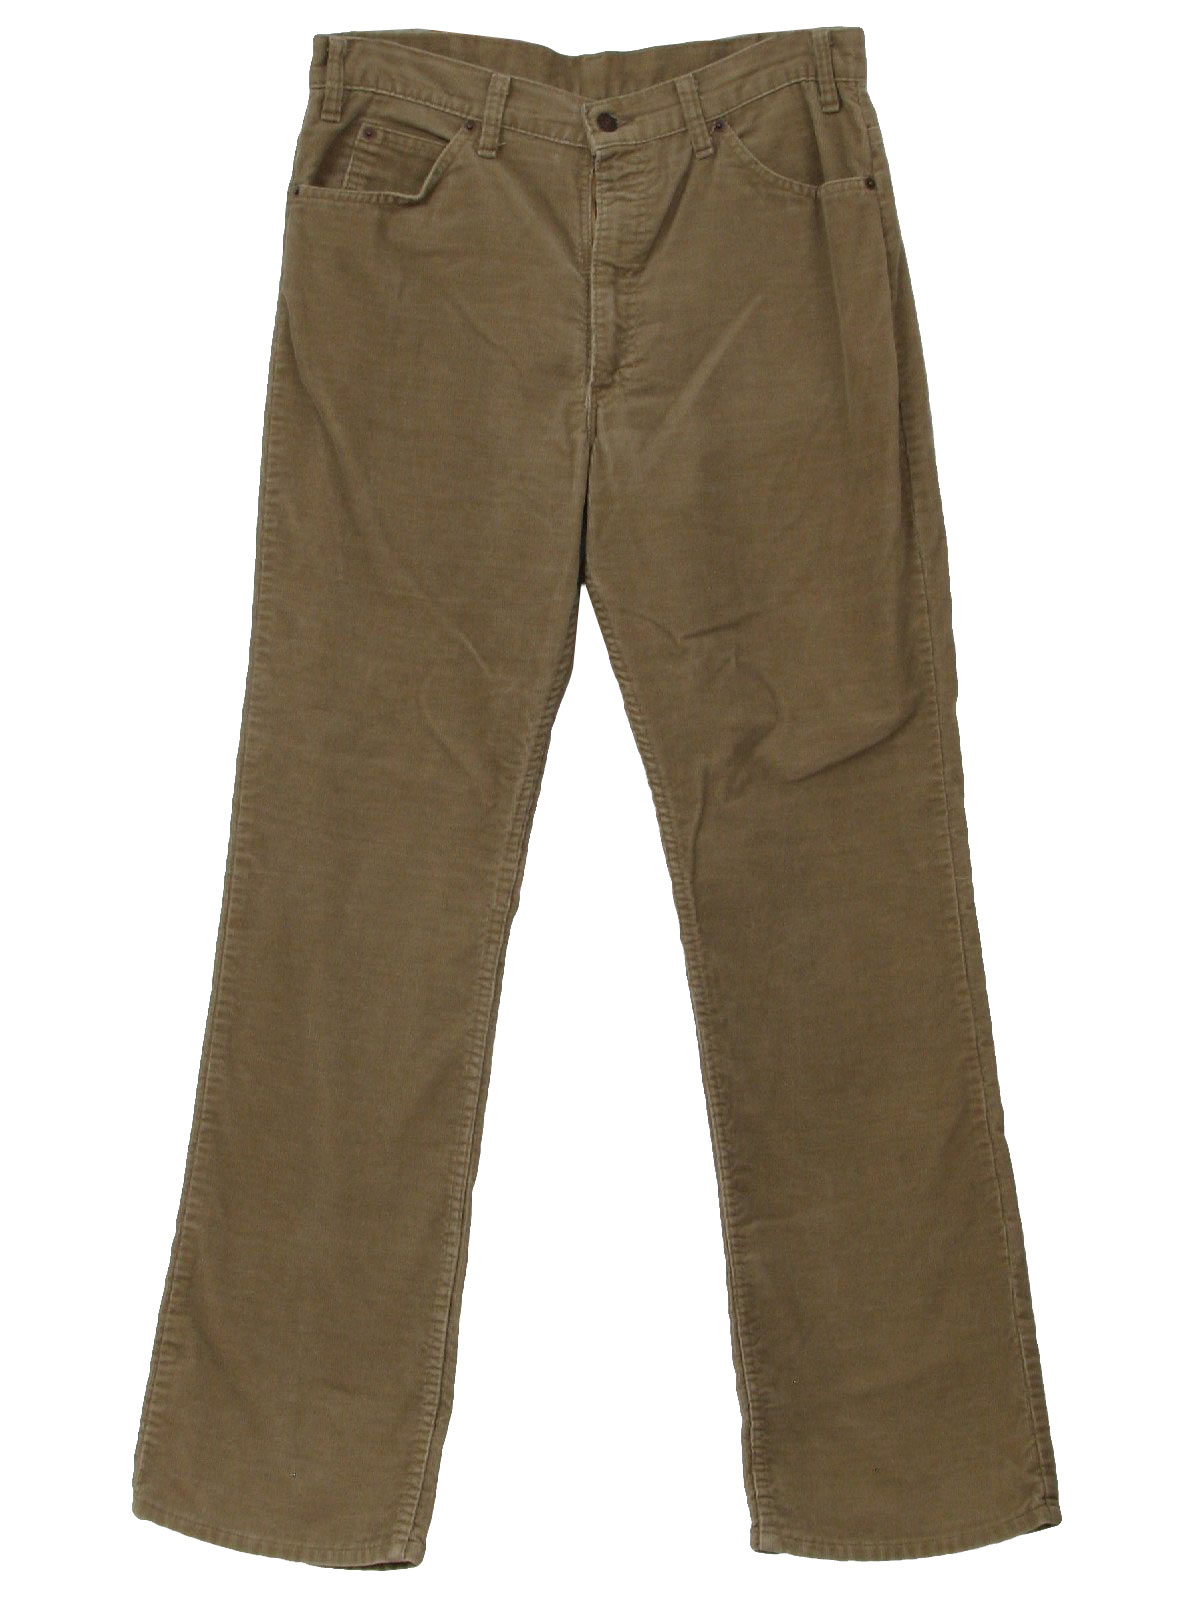 1970's Vintage Levis Flared Pants / Flares: 70s -Levis- Mens tan cotton ...